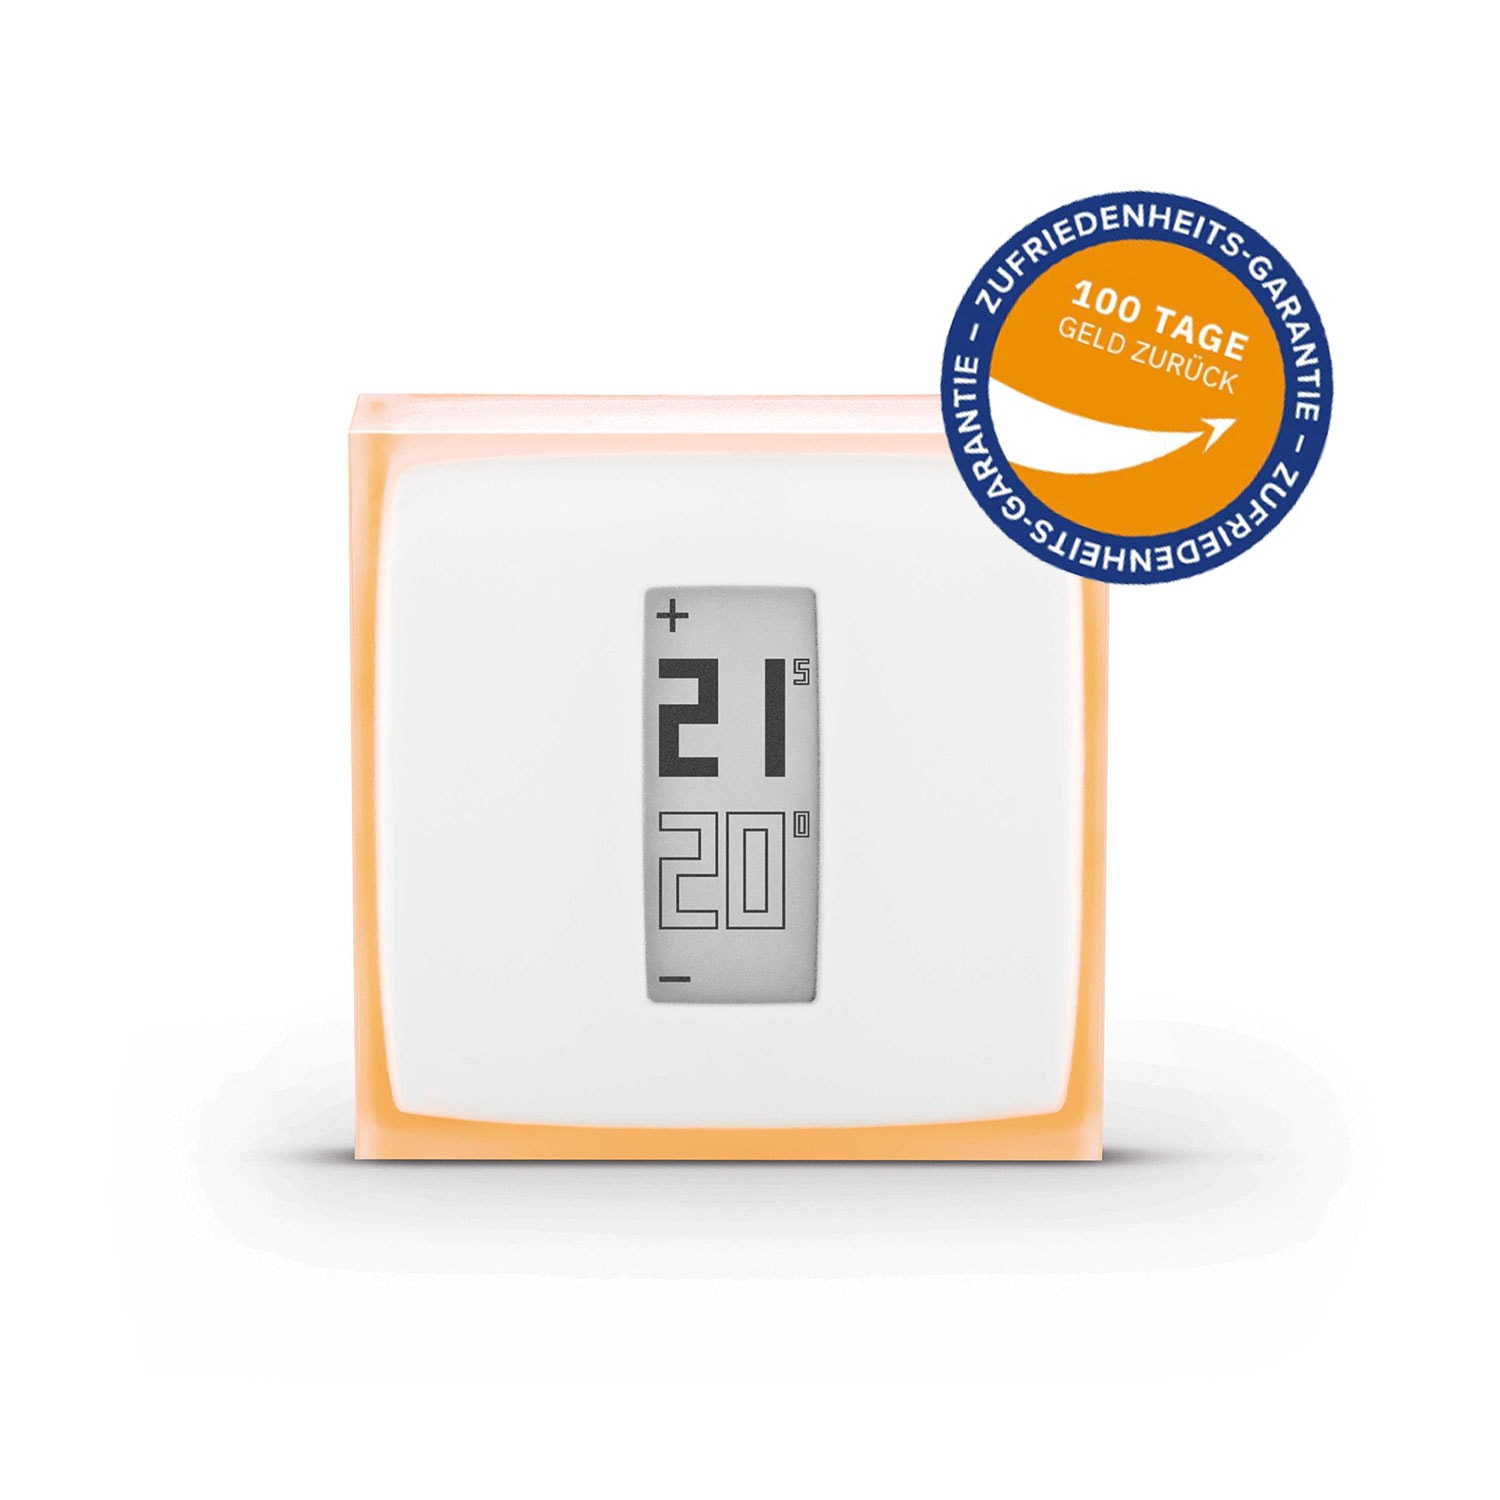 Netatmo »Smartes Garantie 3 Jahren Heizkörperthermostat mit | XXL Thermostat« online kaufen